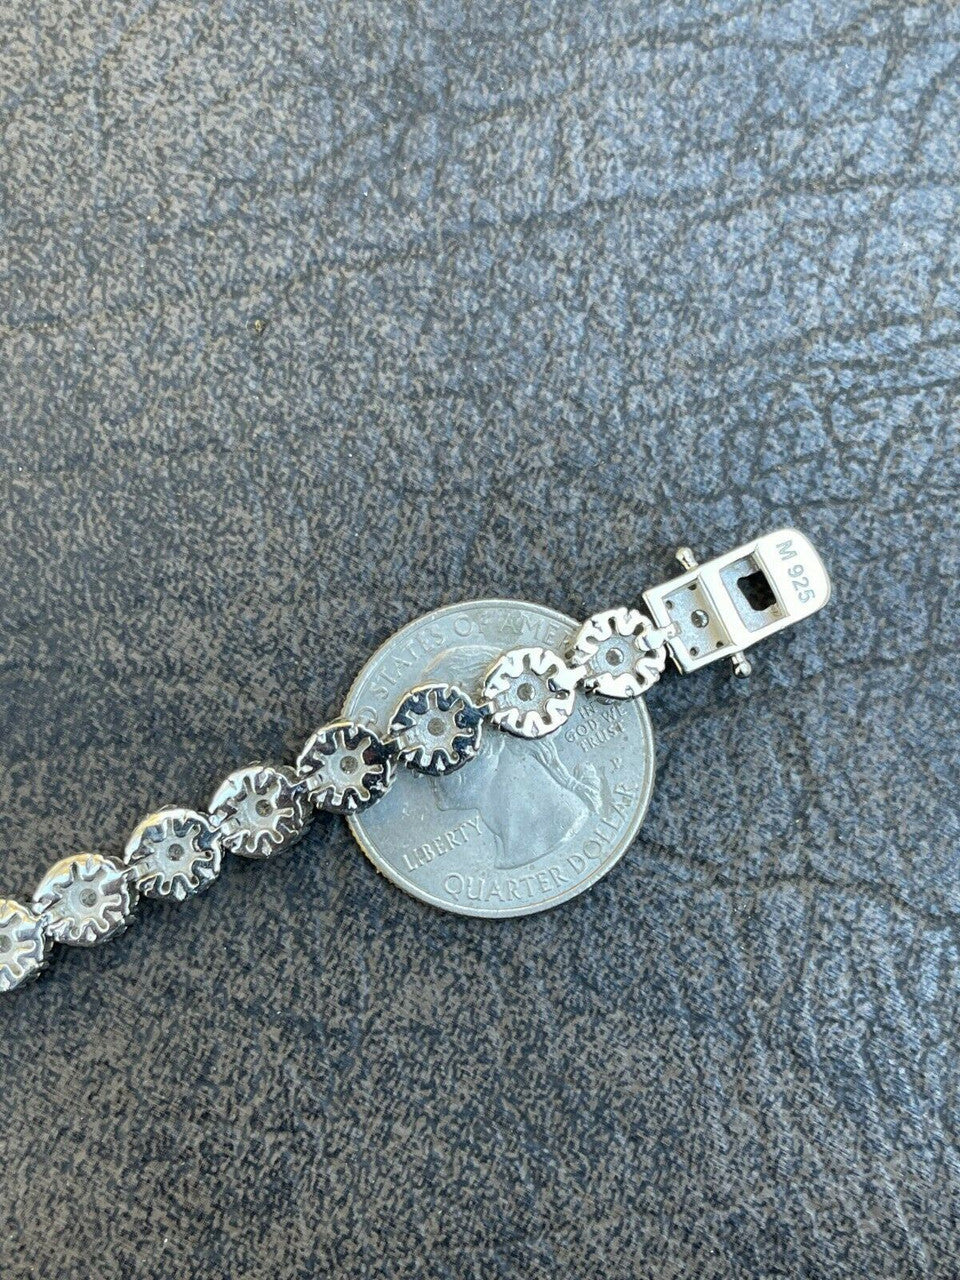 White Gold Clustered Diamond Tennis Bracelet, 7mm Moissanite Diamond ,925 Sterling Silver wristlet